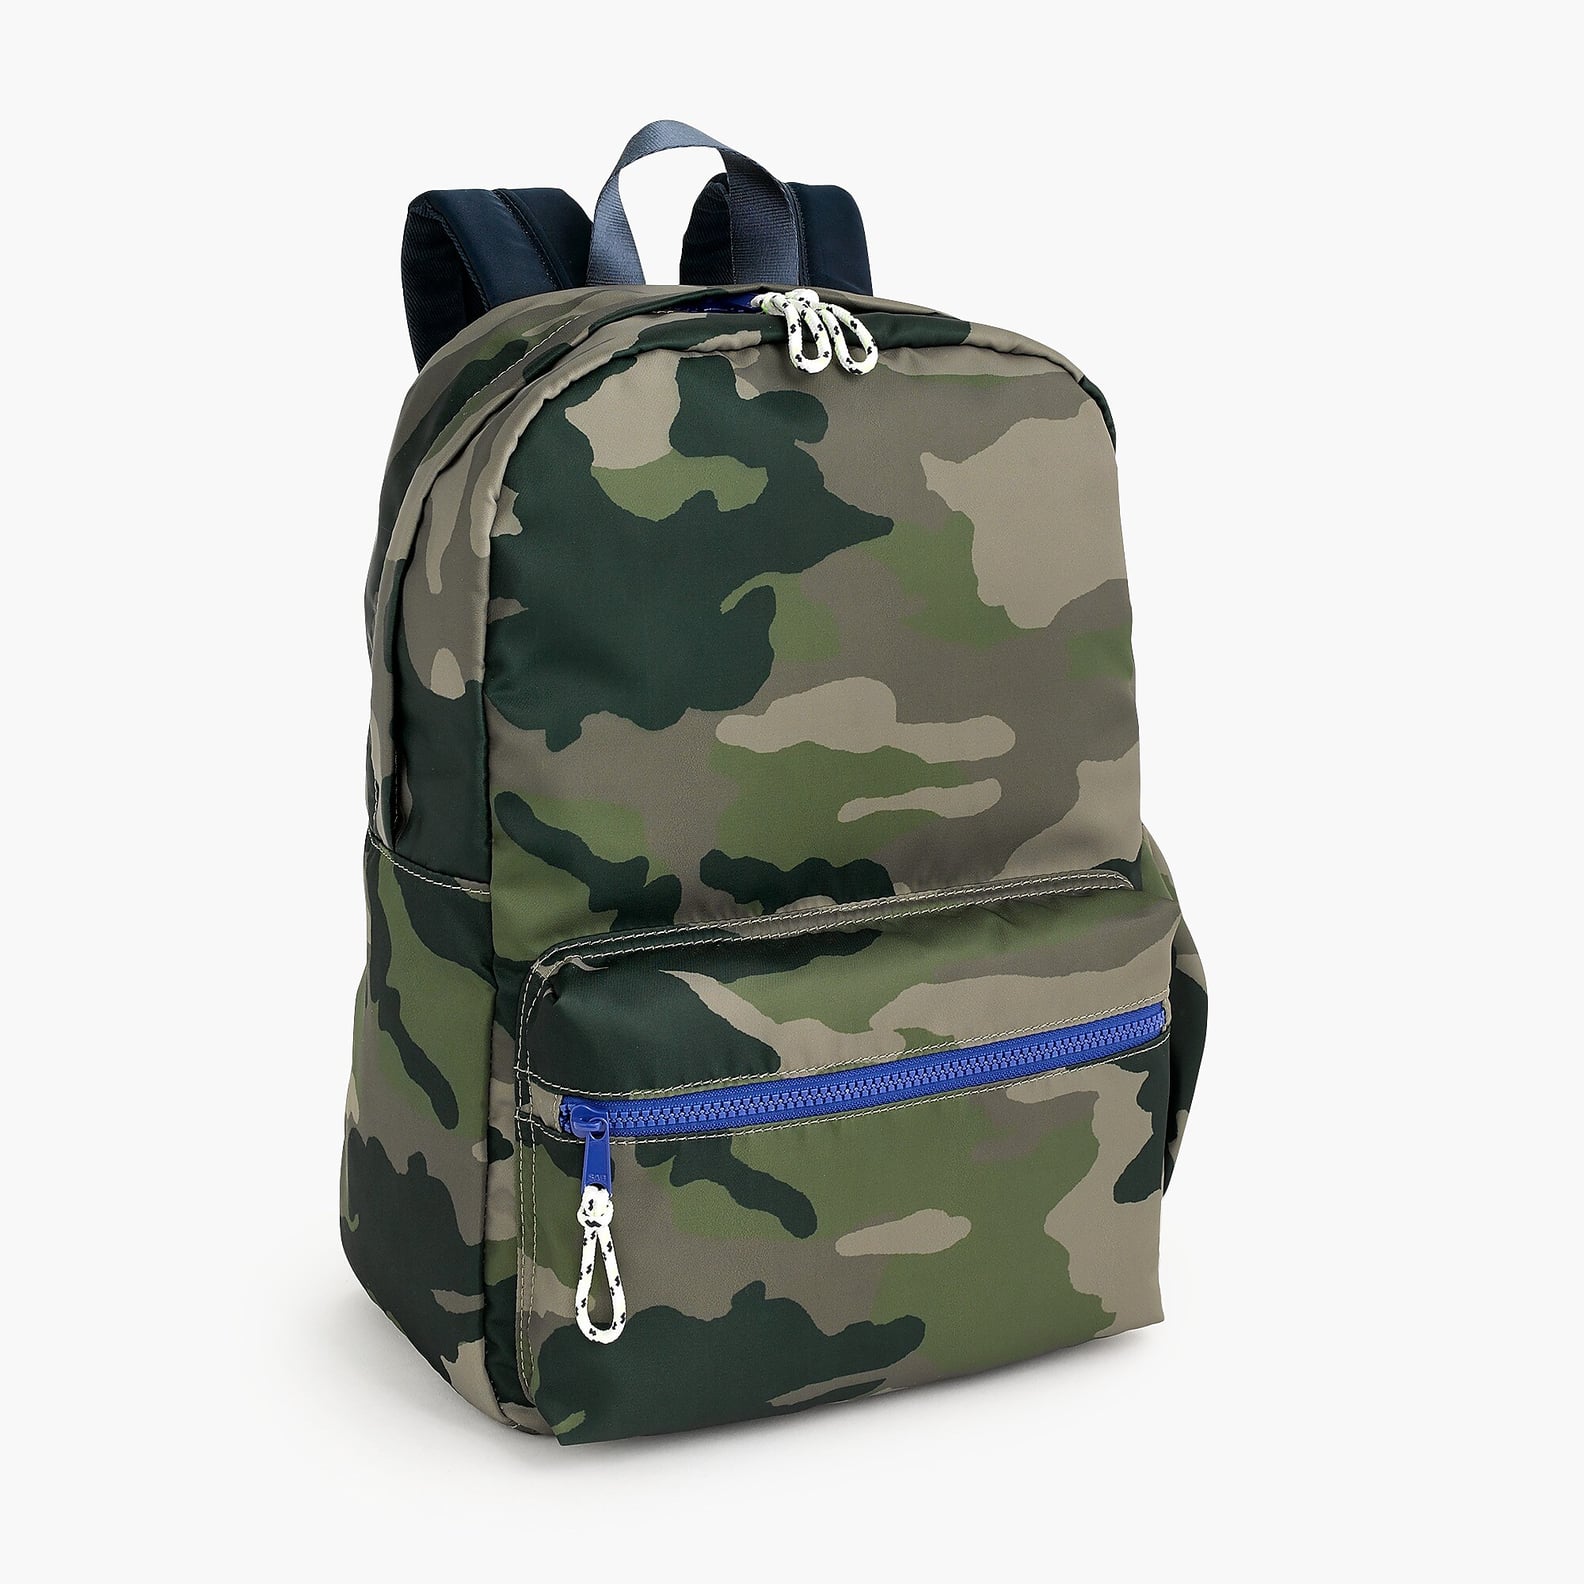 Cool Backpacks For Kids | POPSUGAR Family